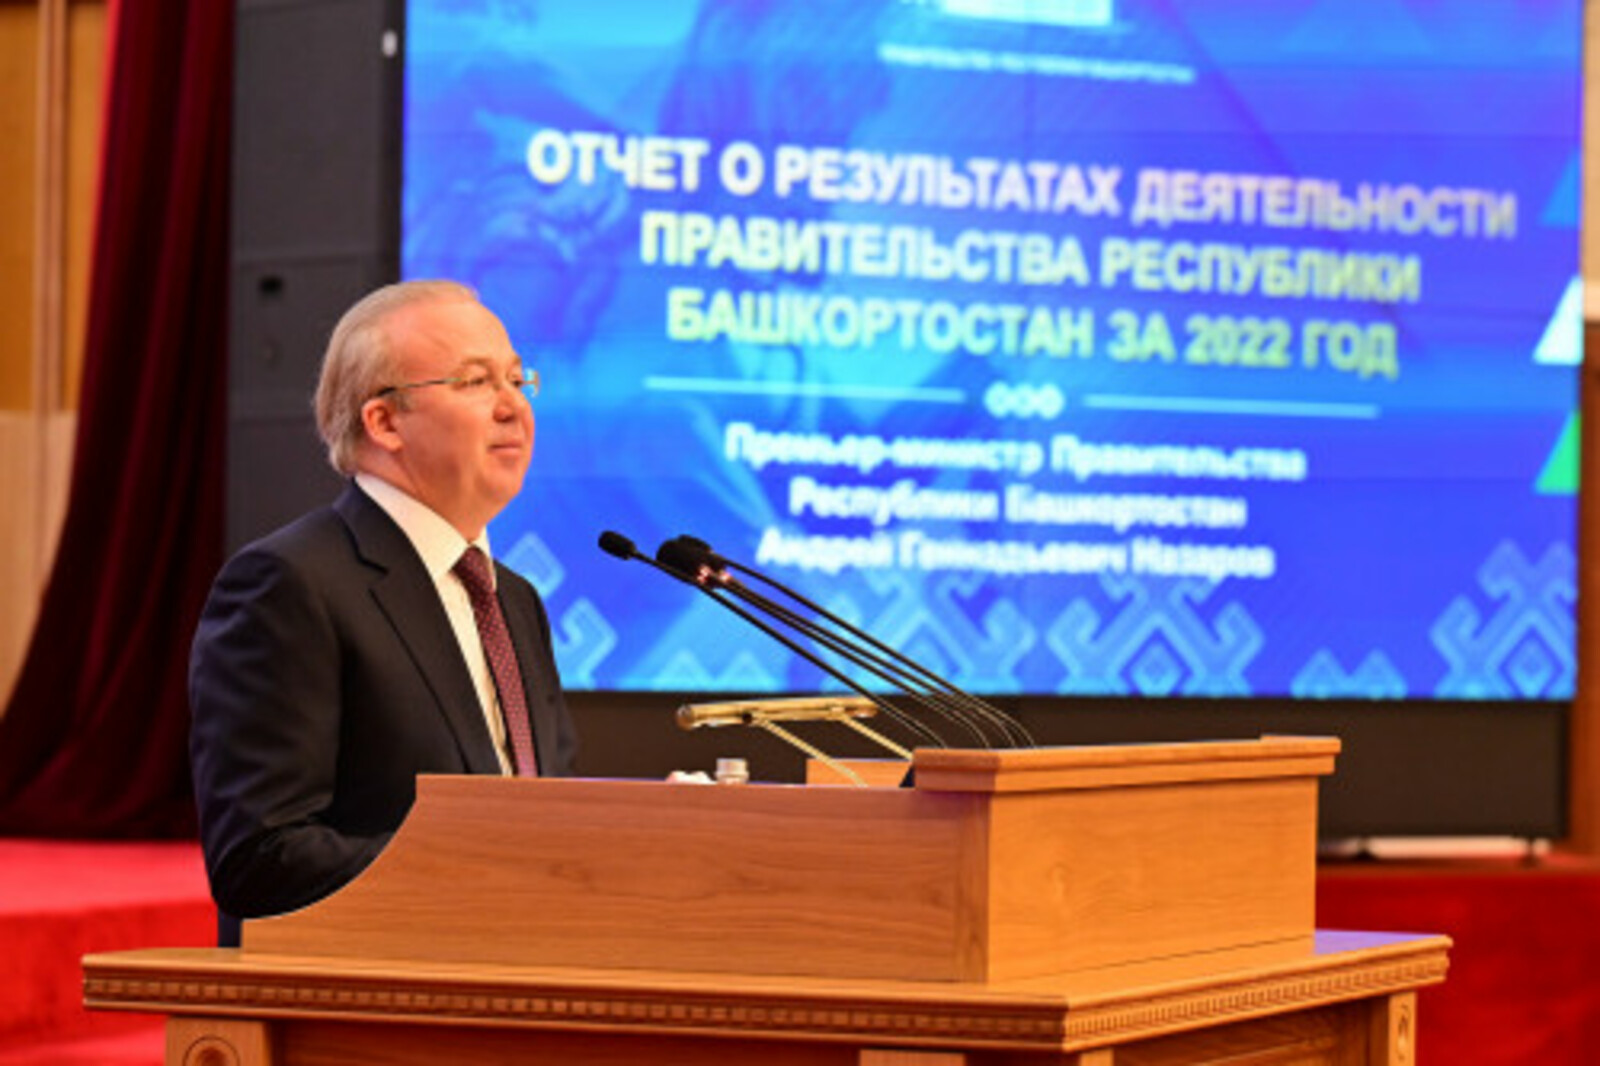 Андрей Назаров: «В 2022 году на развитие сферы образования было направлено порядка 91 млрд рублей»